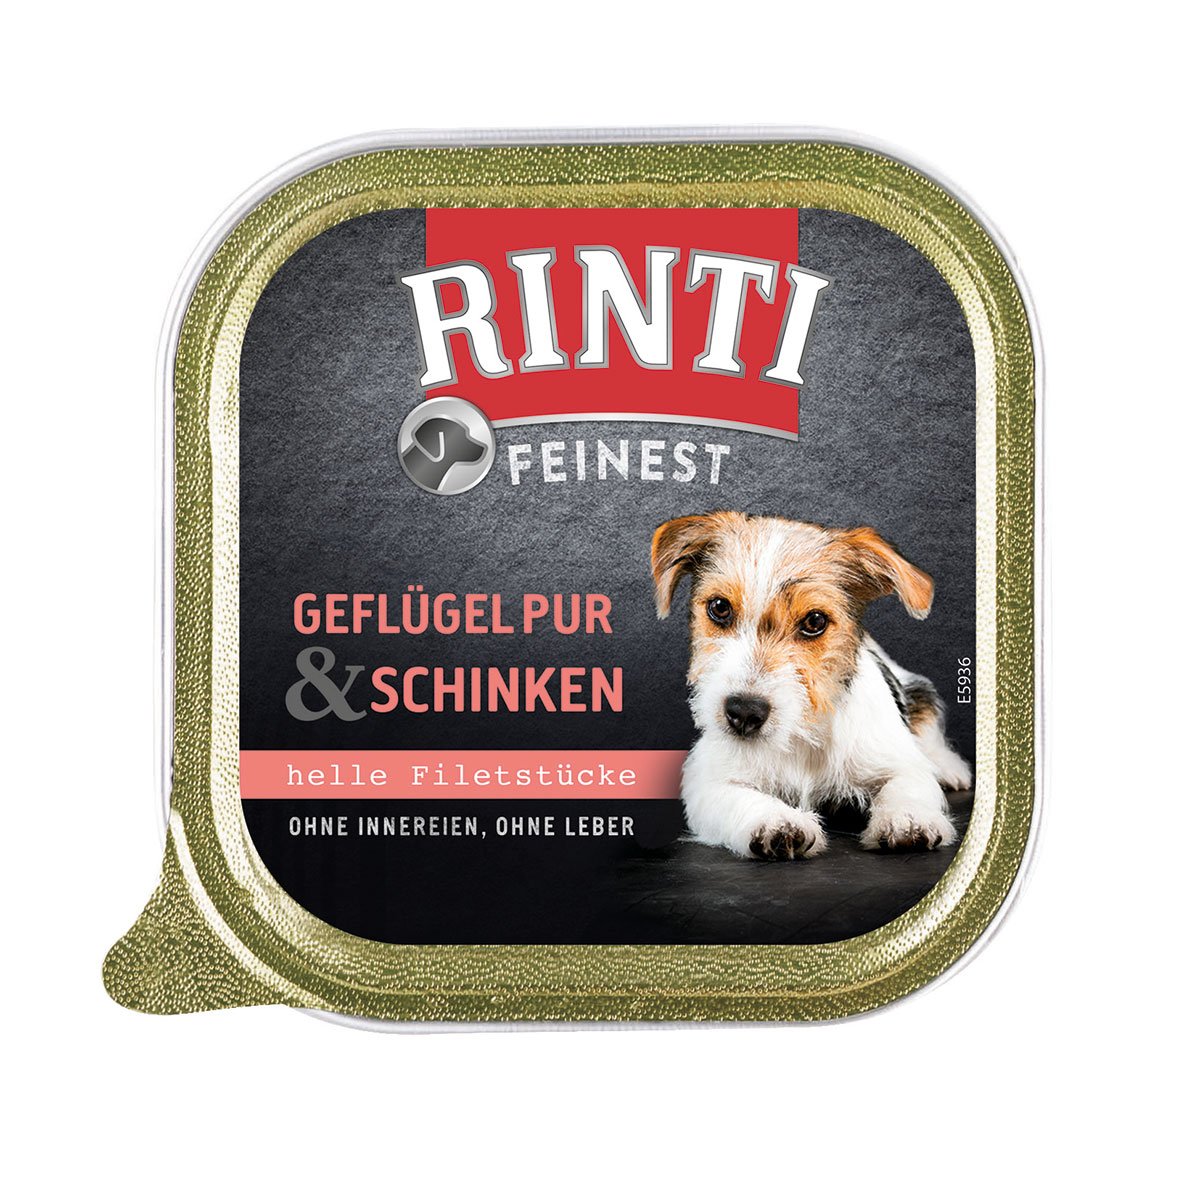 Rinti Feinest Geflügel pur & Schinken 11x150g von Rinti